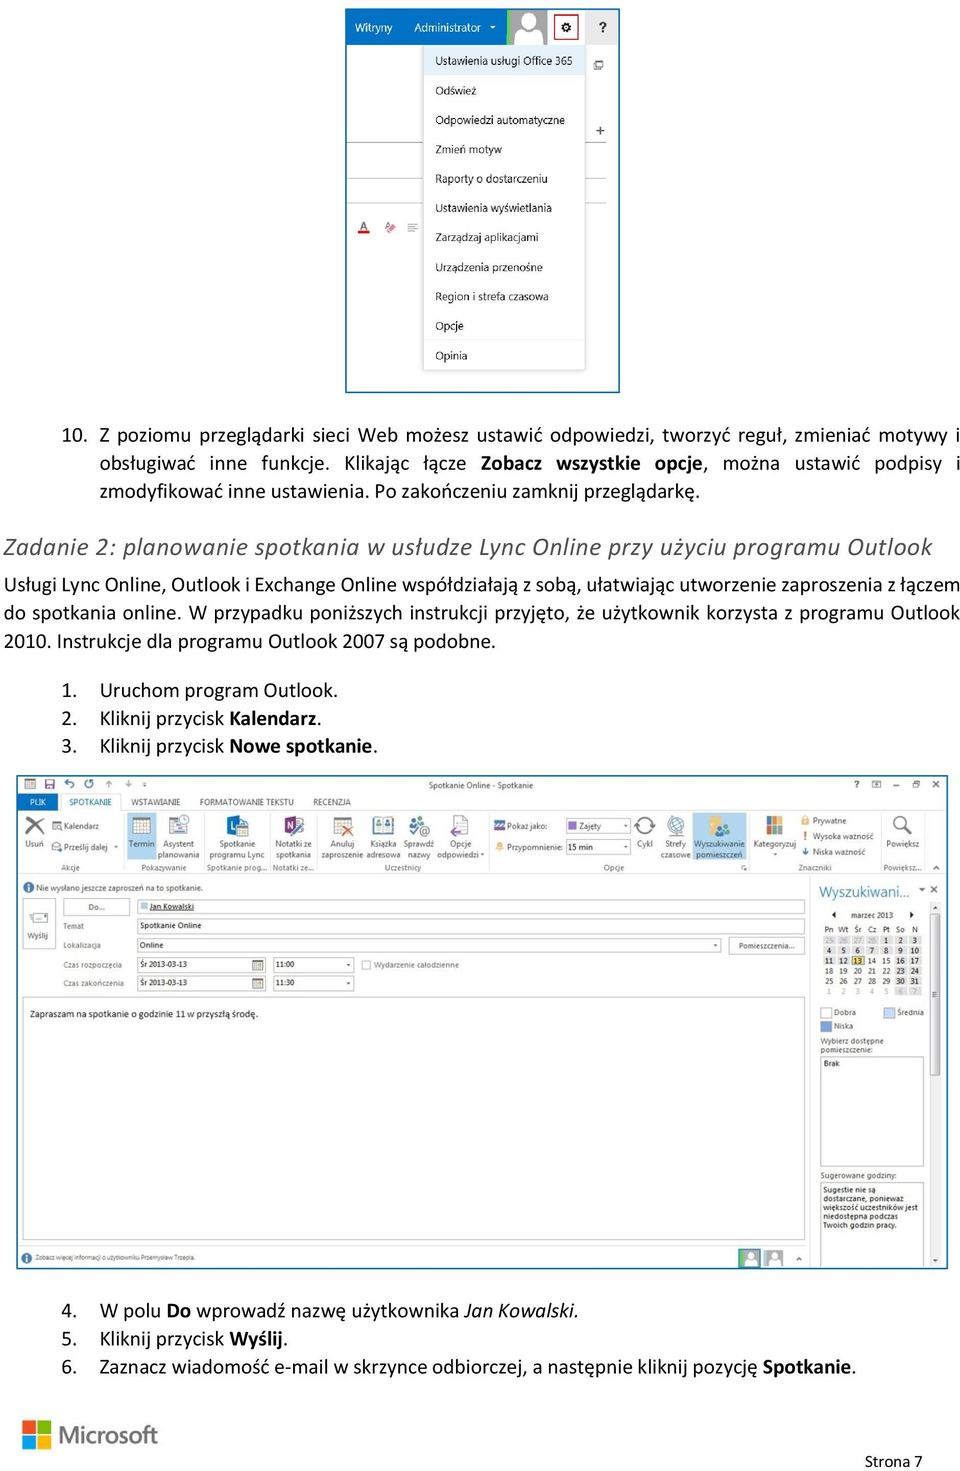 Zadanie 2: planowanie spotkania w usłudze Lync Online przy użyciu programu Outlook Usługi Lync Online, Outlook i Exchange Online współdziałają z sobą, ułatwiając utworzenie zaproszenia z łączem do